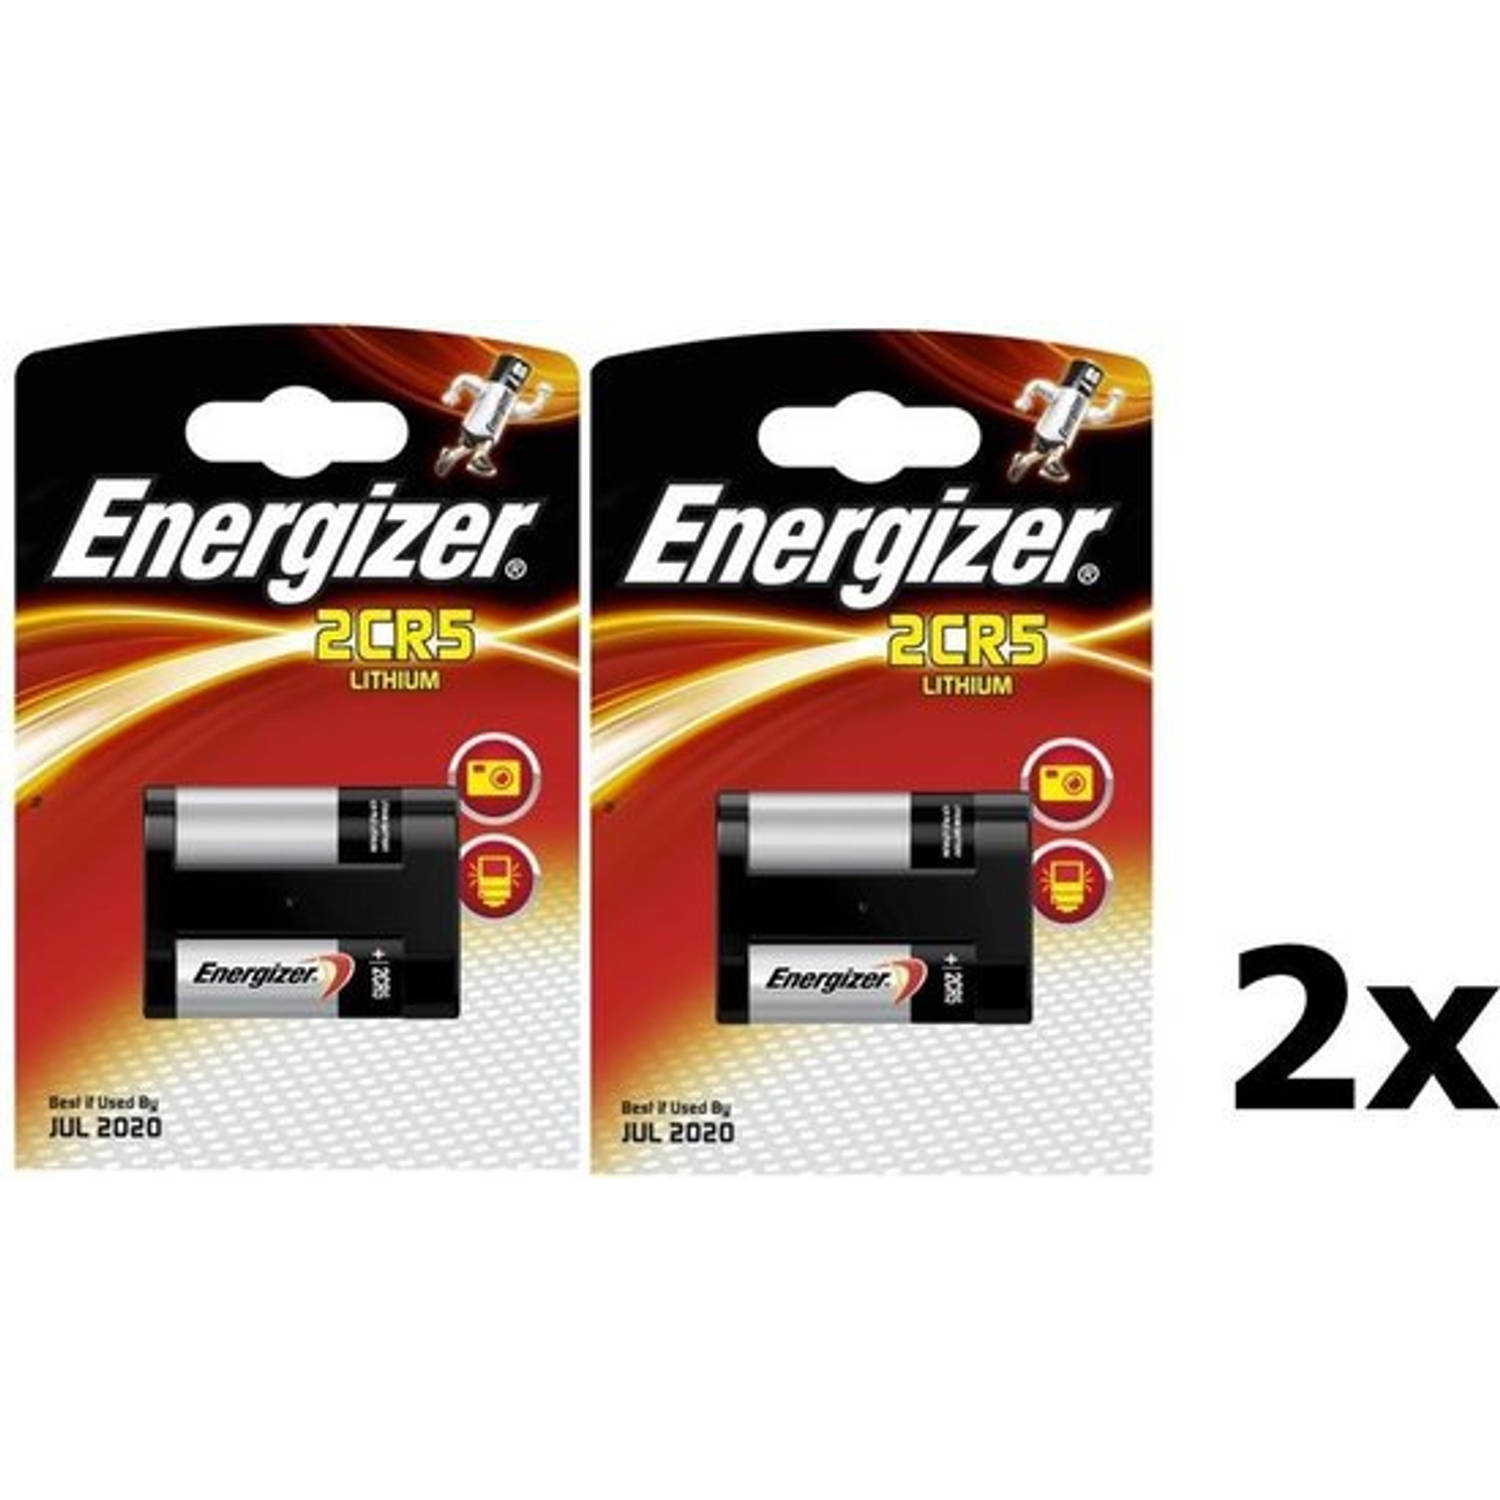 2 Stuks Energizer 2cr5-Dl245-El2cr5 6v Lithium Batterij